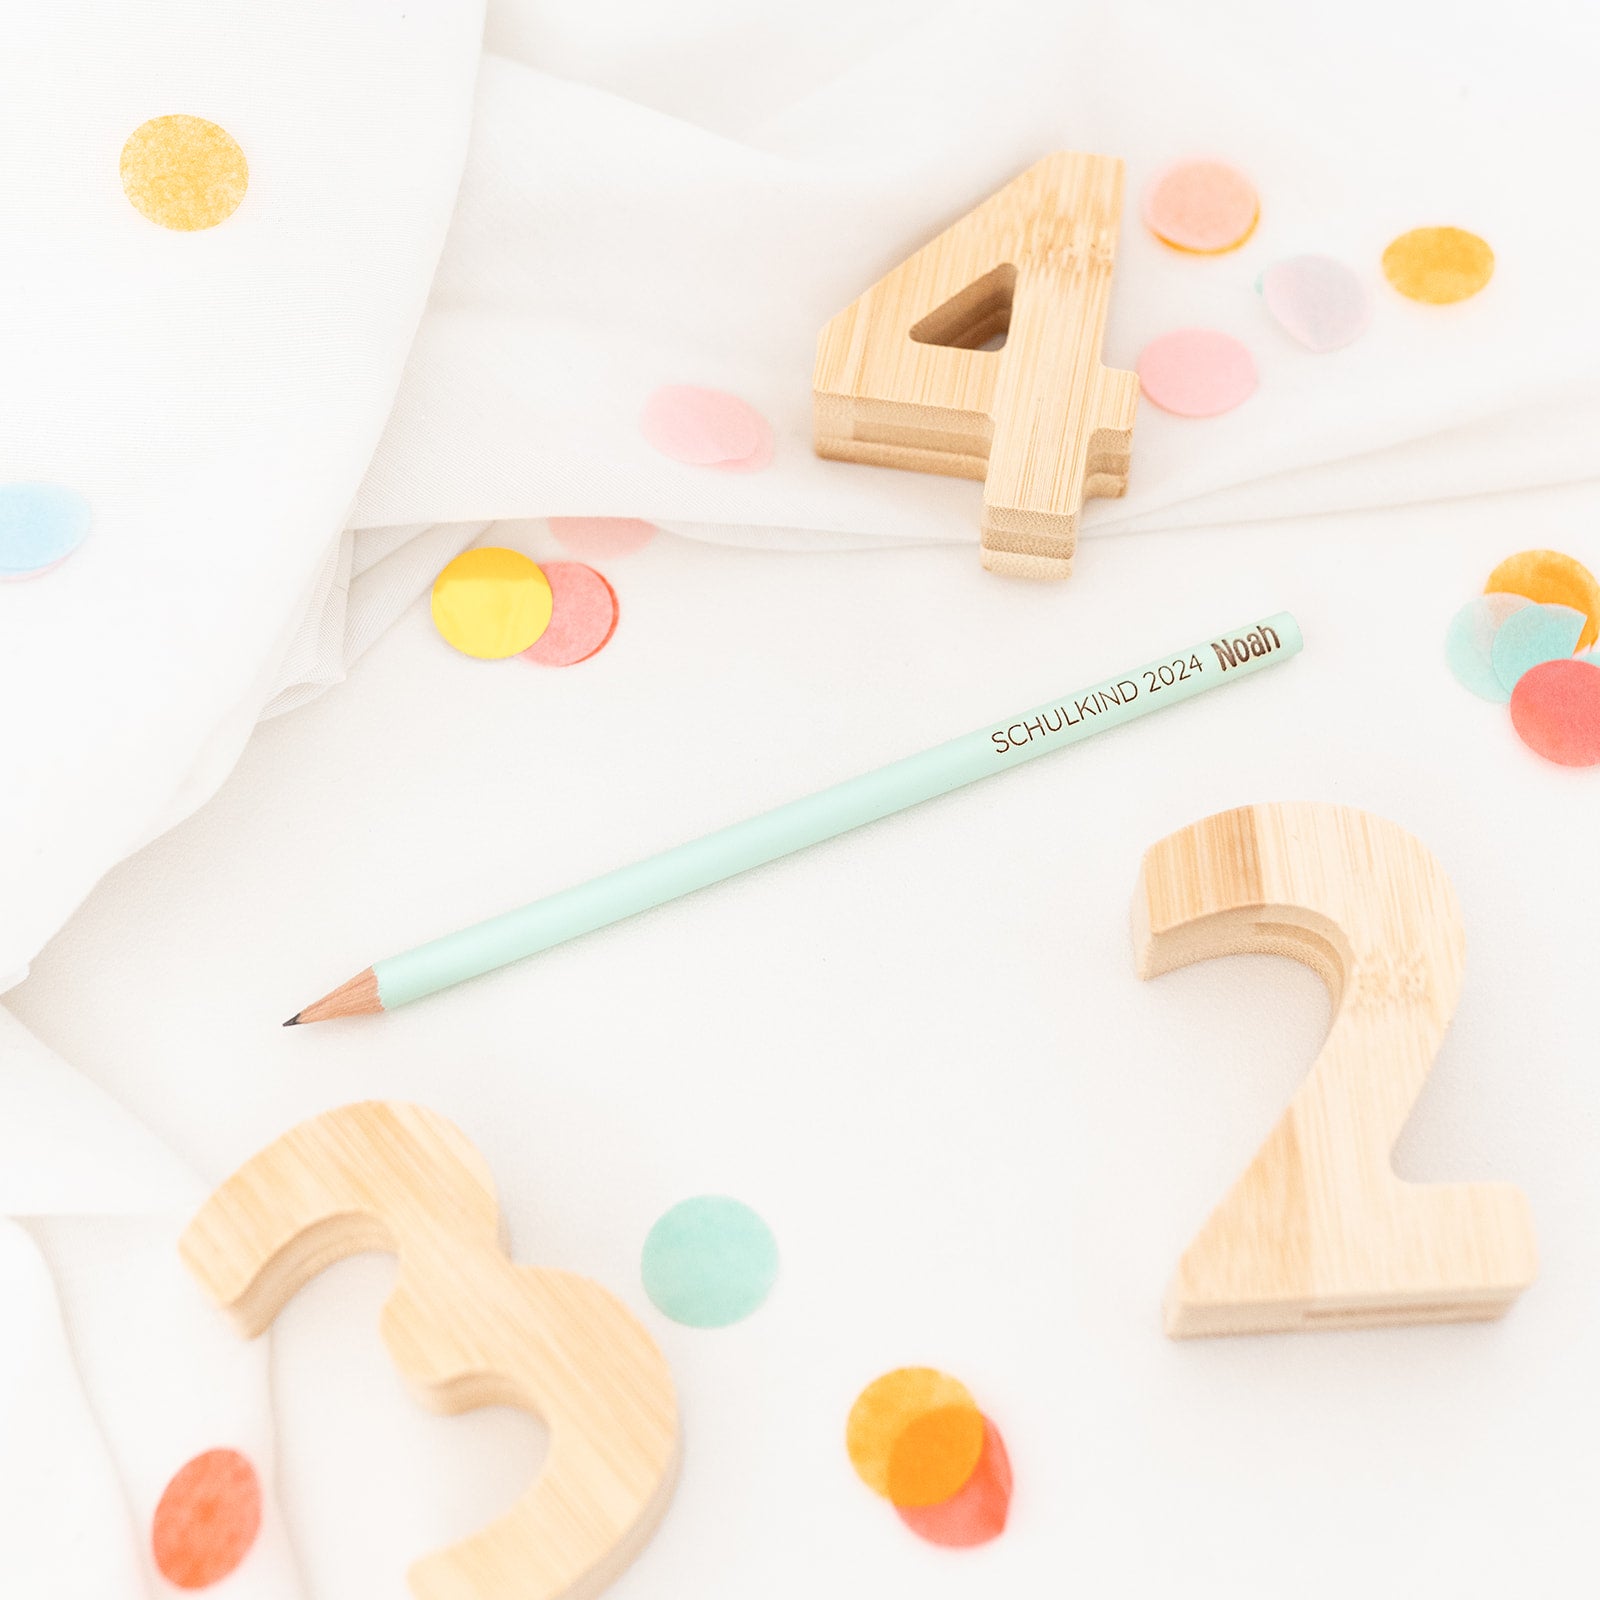 Bleistift pastell personalisiert - Schulkind 2024